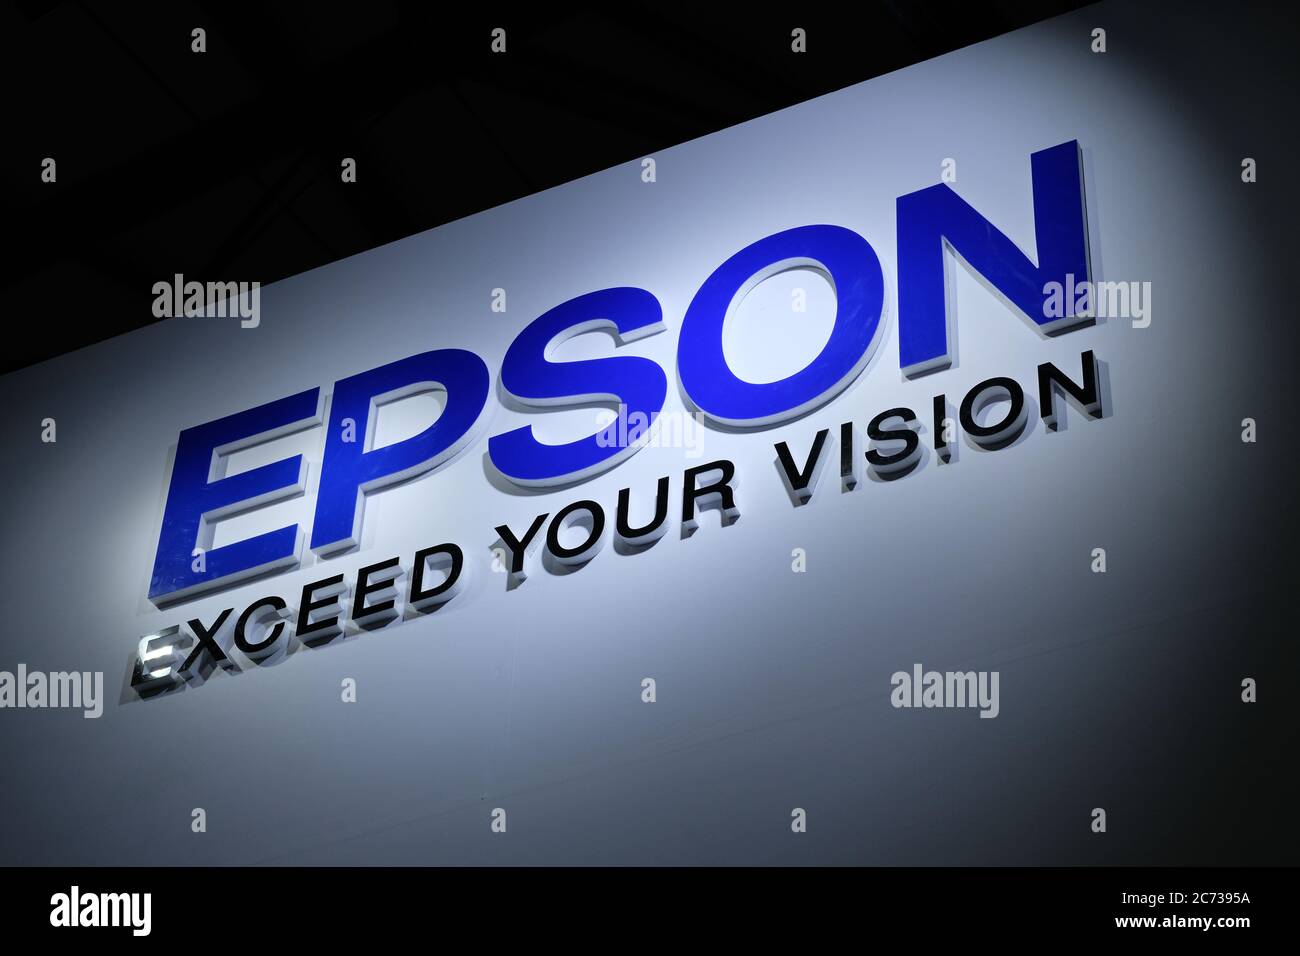 Logo bleu brillant de la marque EPSON Corporation avec slogan dépassez  votre vision. Sur fond blanc foncé. Célèbre entreprise d'électronique  japonaise Photo Stock - Alamy